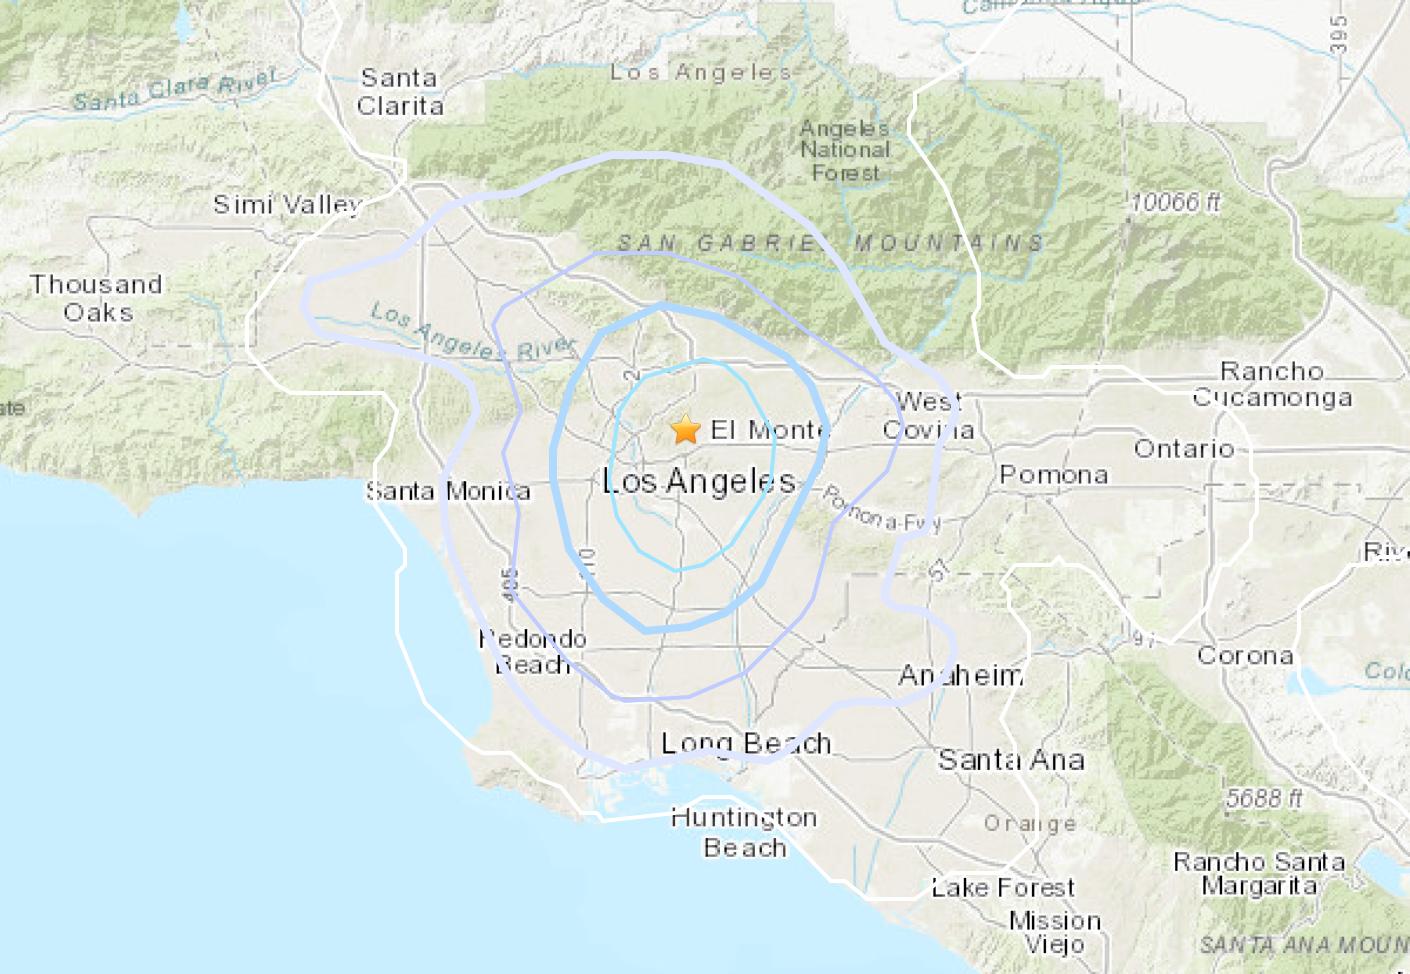 Magnitude-3.5 Earthquake Briefly Jostles Los Angeles Area